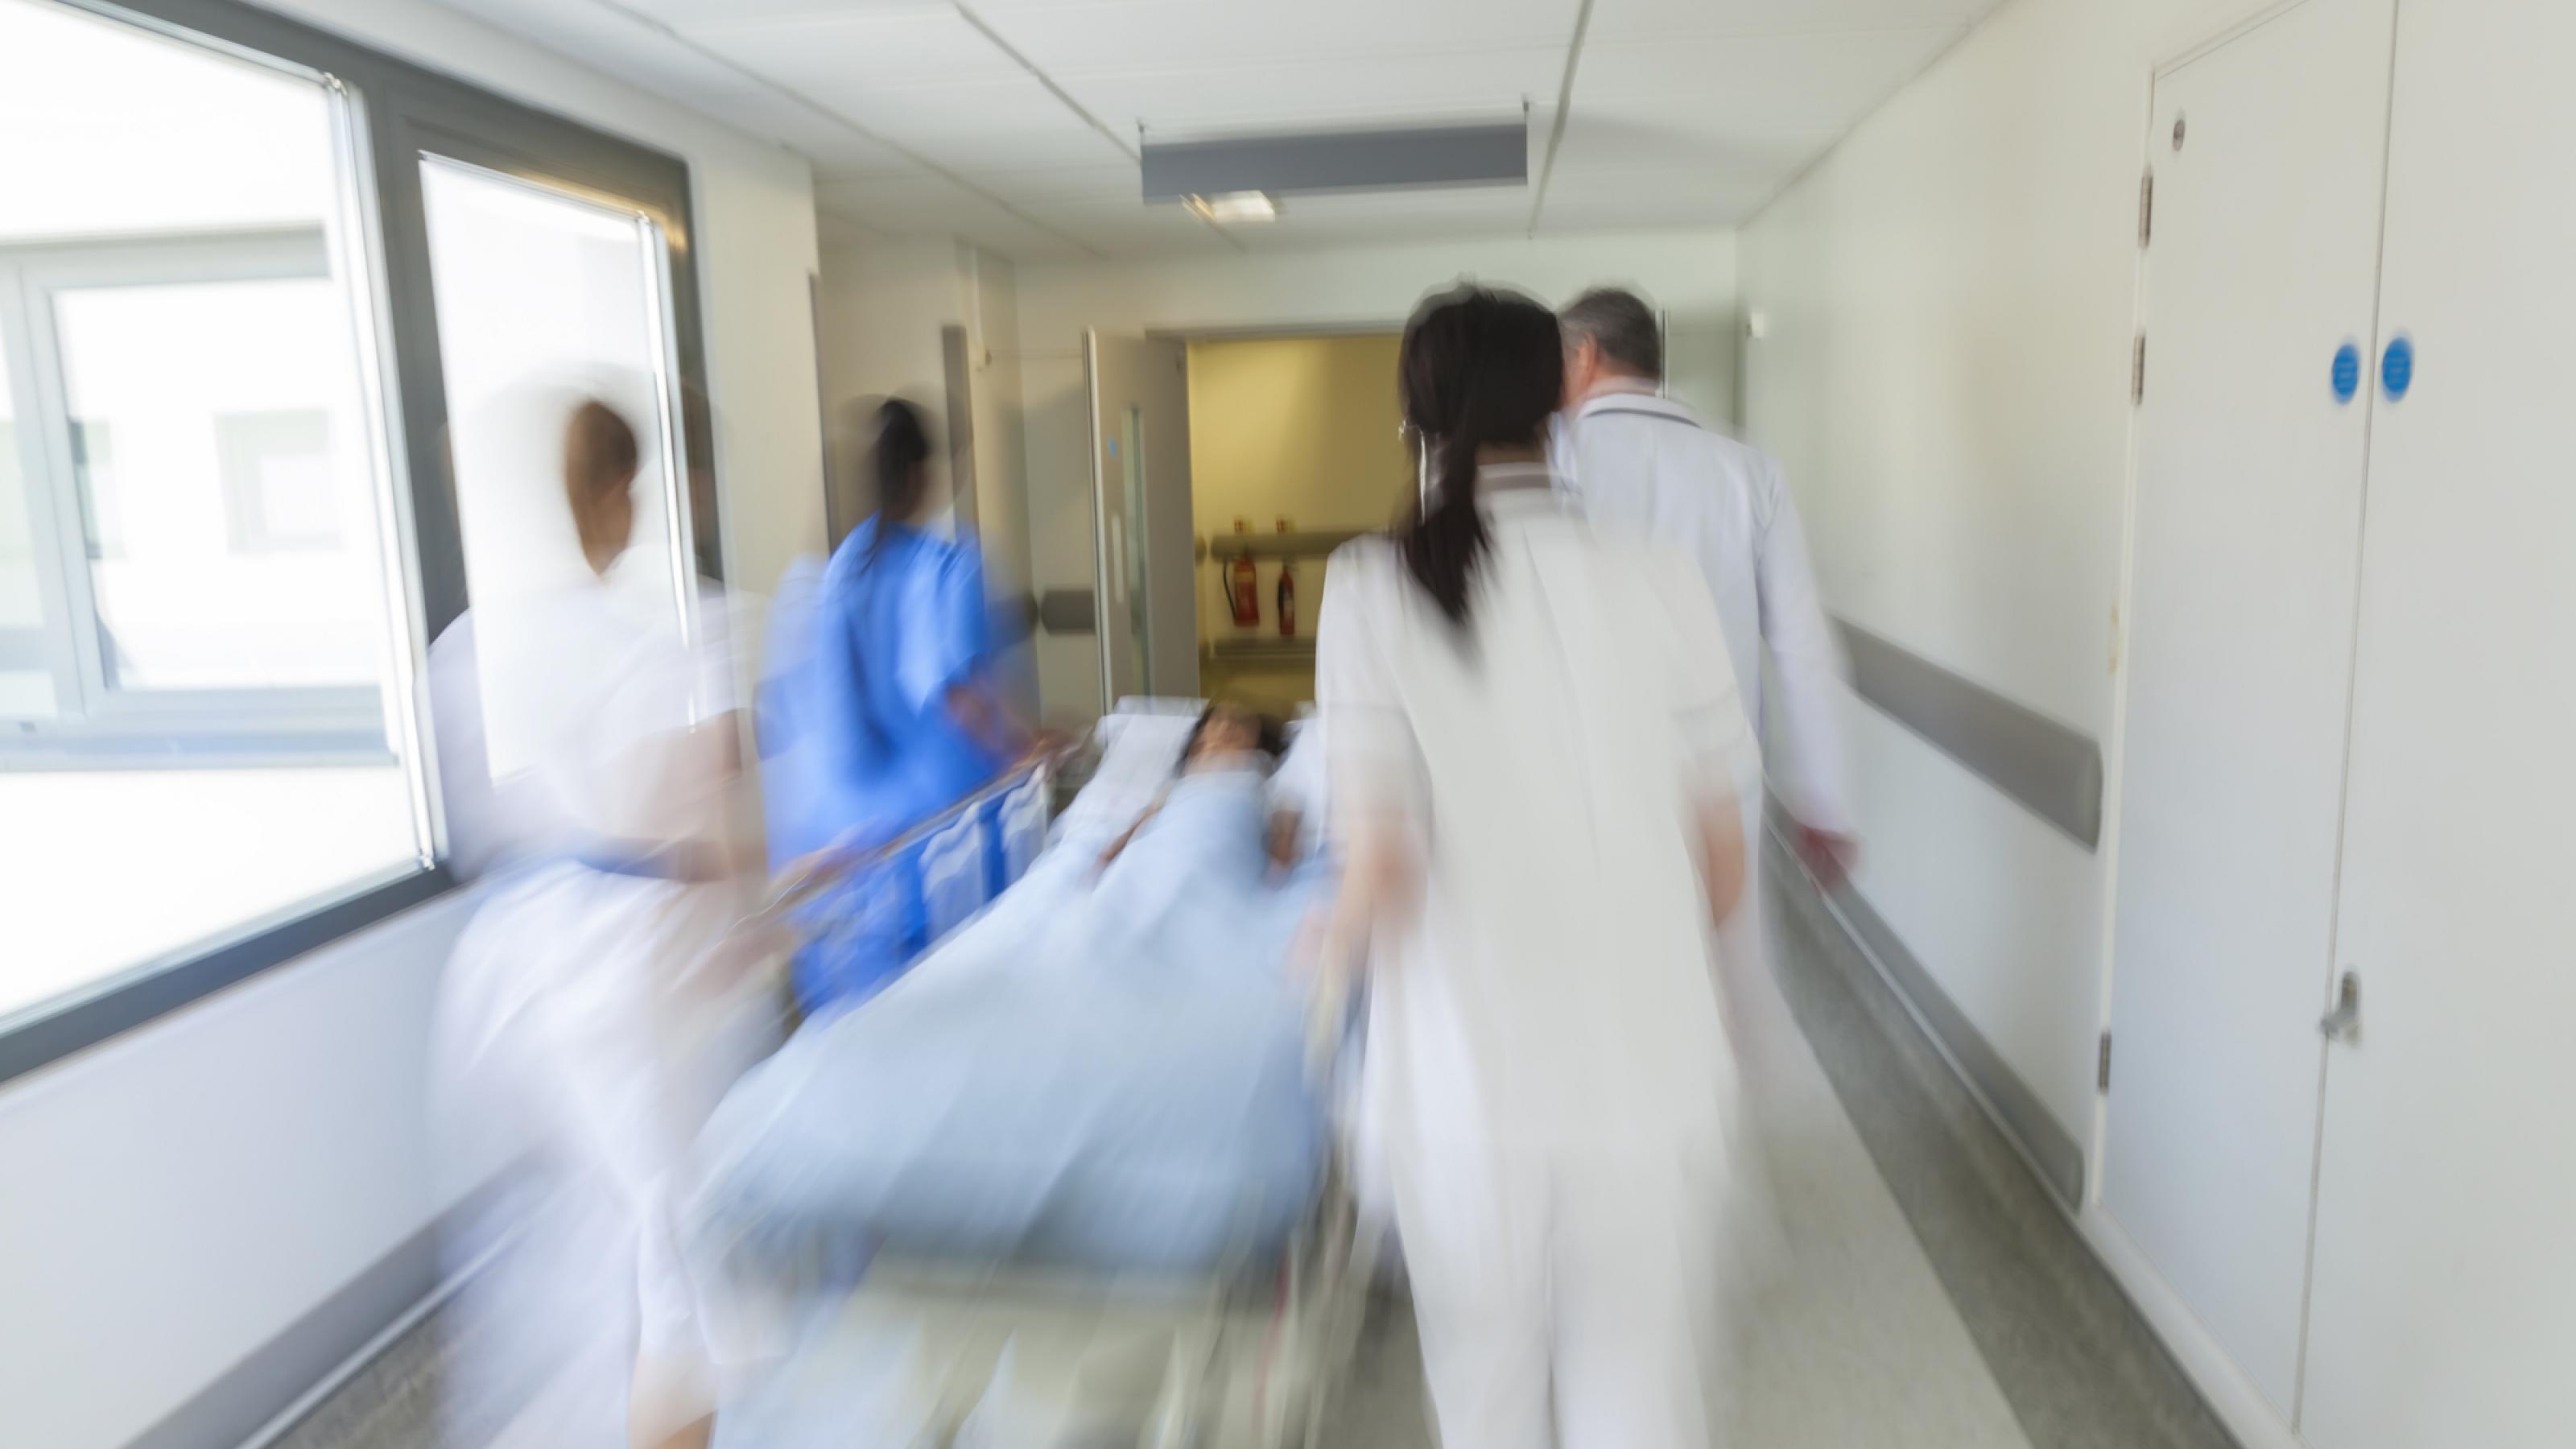 Das Bild zeigt medizinisches Personal, das einen Patienten in einem Bett durch die Klinik schiebt. Das Symbolfoto ist unscharf und soll Eile darstellen.